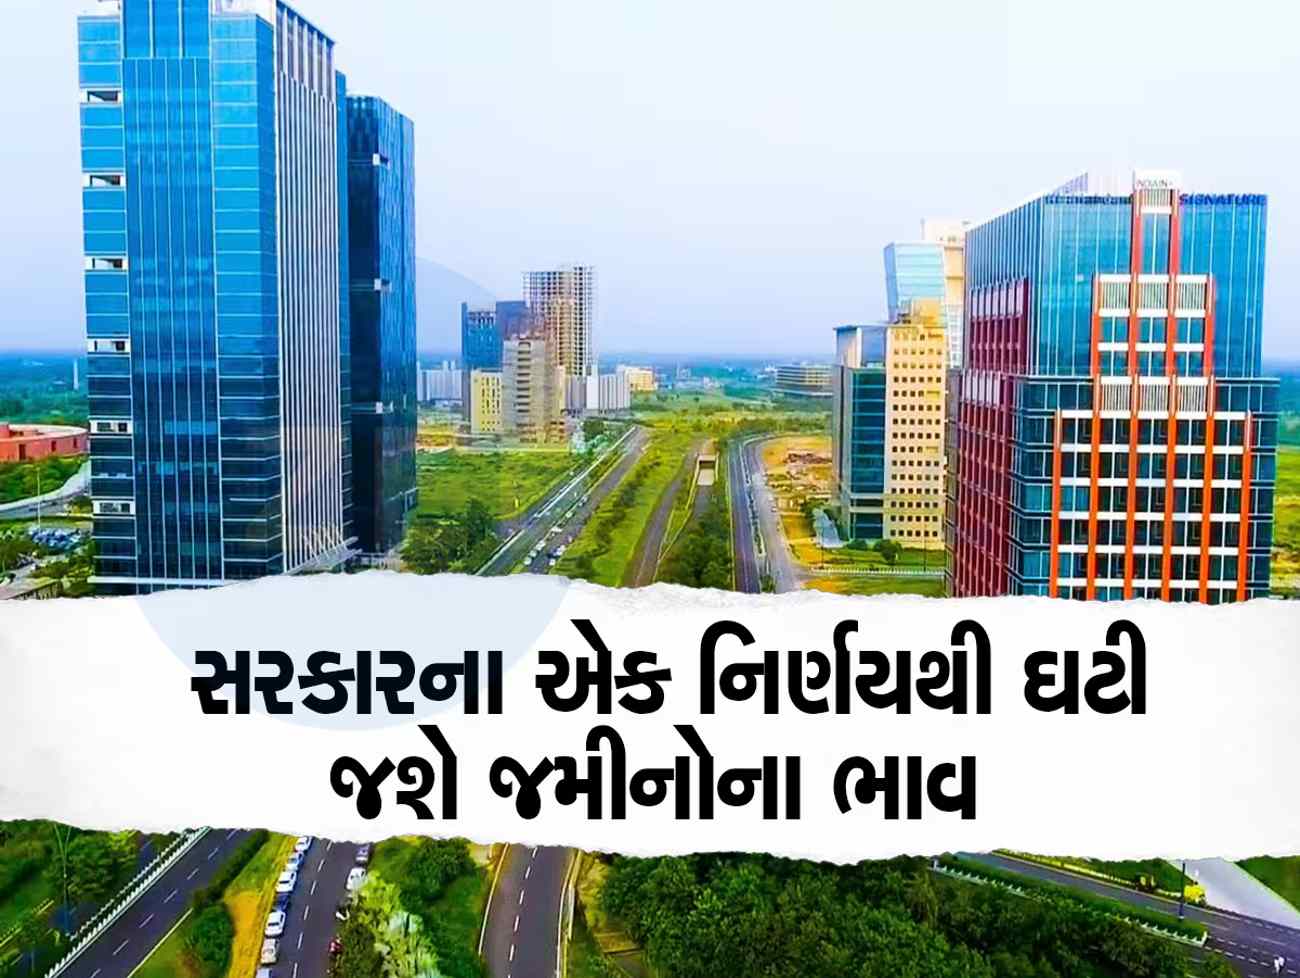 ગુજરાતના આ શહેરમાં જમીનના ભાવમાં મોટો કડાકો બોલાશે, સરકારે રદ કર્યો મોટો પ્લાન